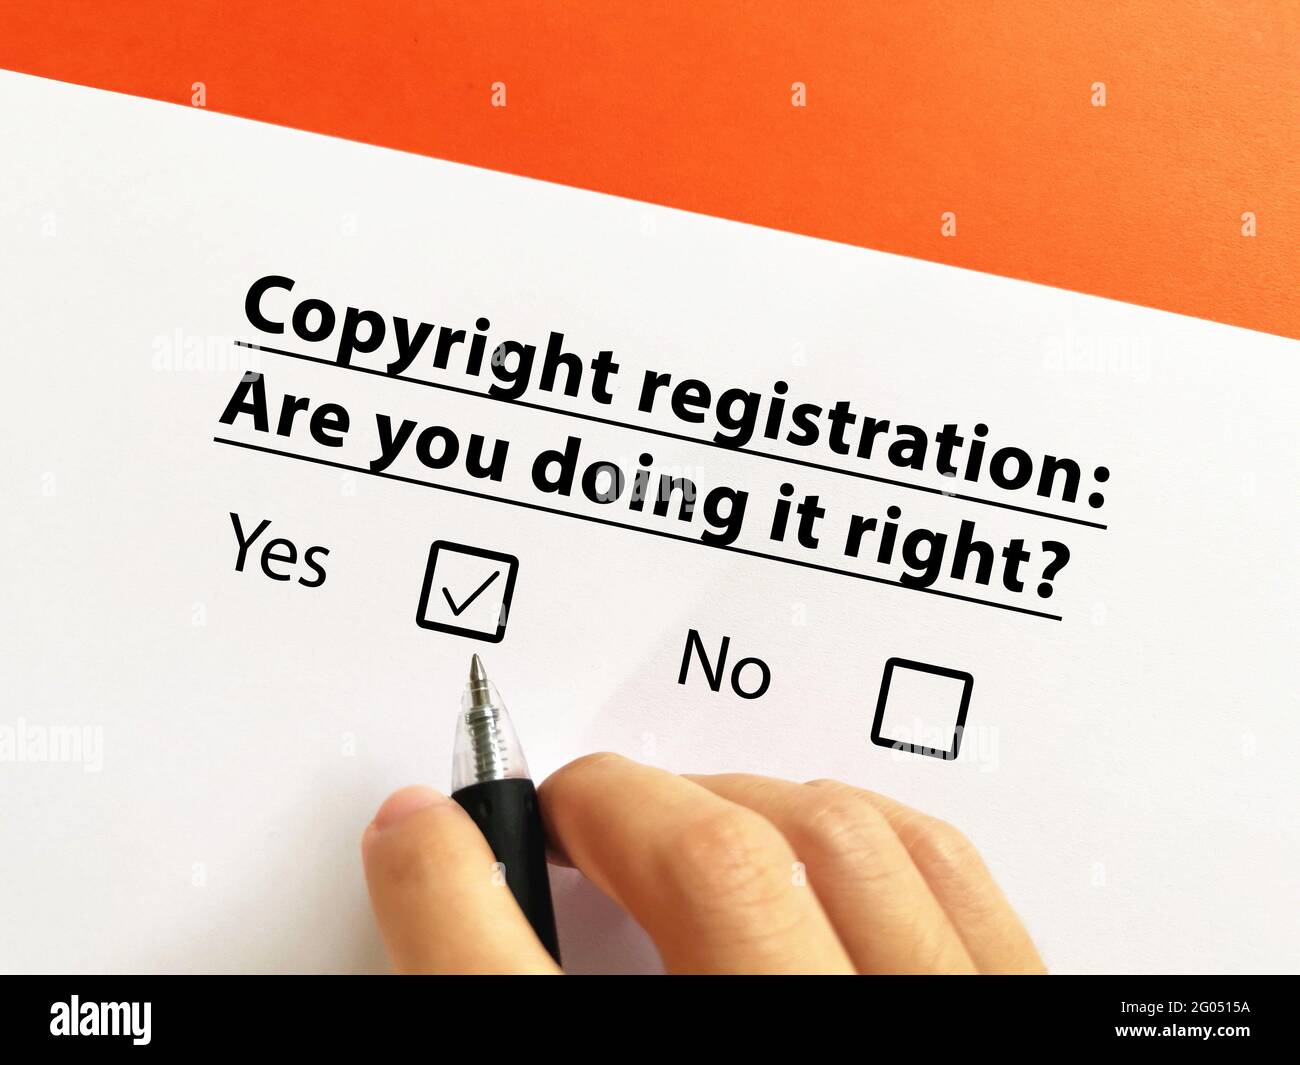 Una persona está respondiendo a la pregunta sobre el derecho de propiedad intelectual. Él sabe sobre el registro del copyright y él piensa que él lo está haciendo bien. Foto de stock